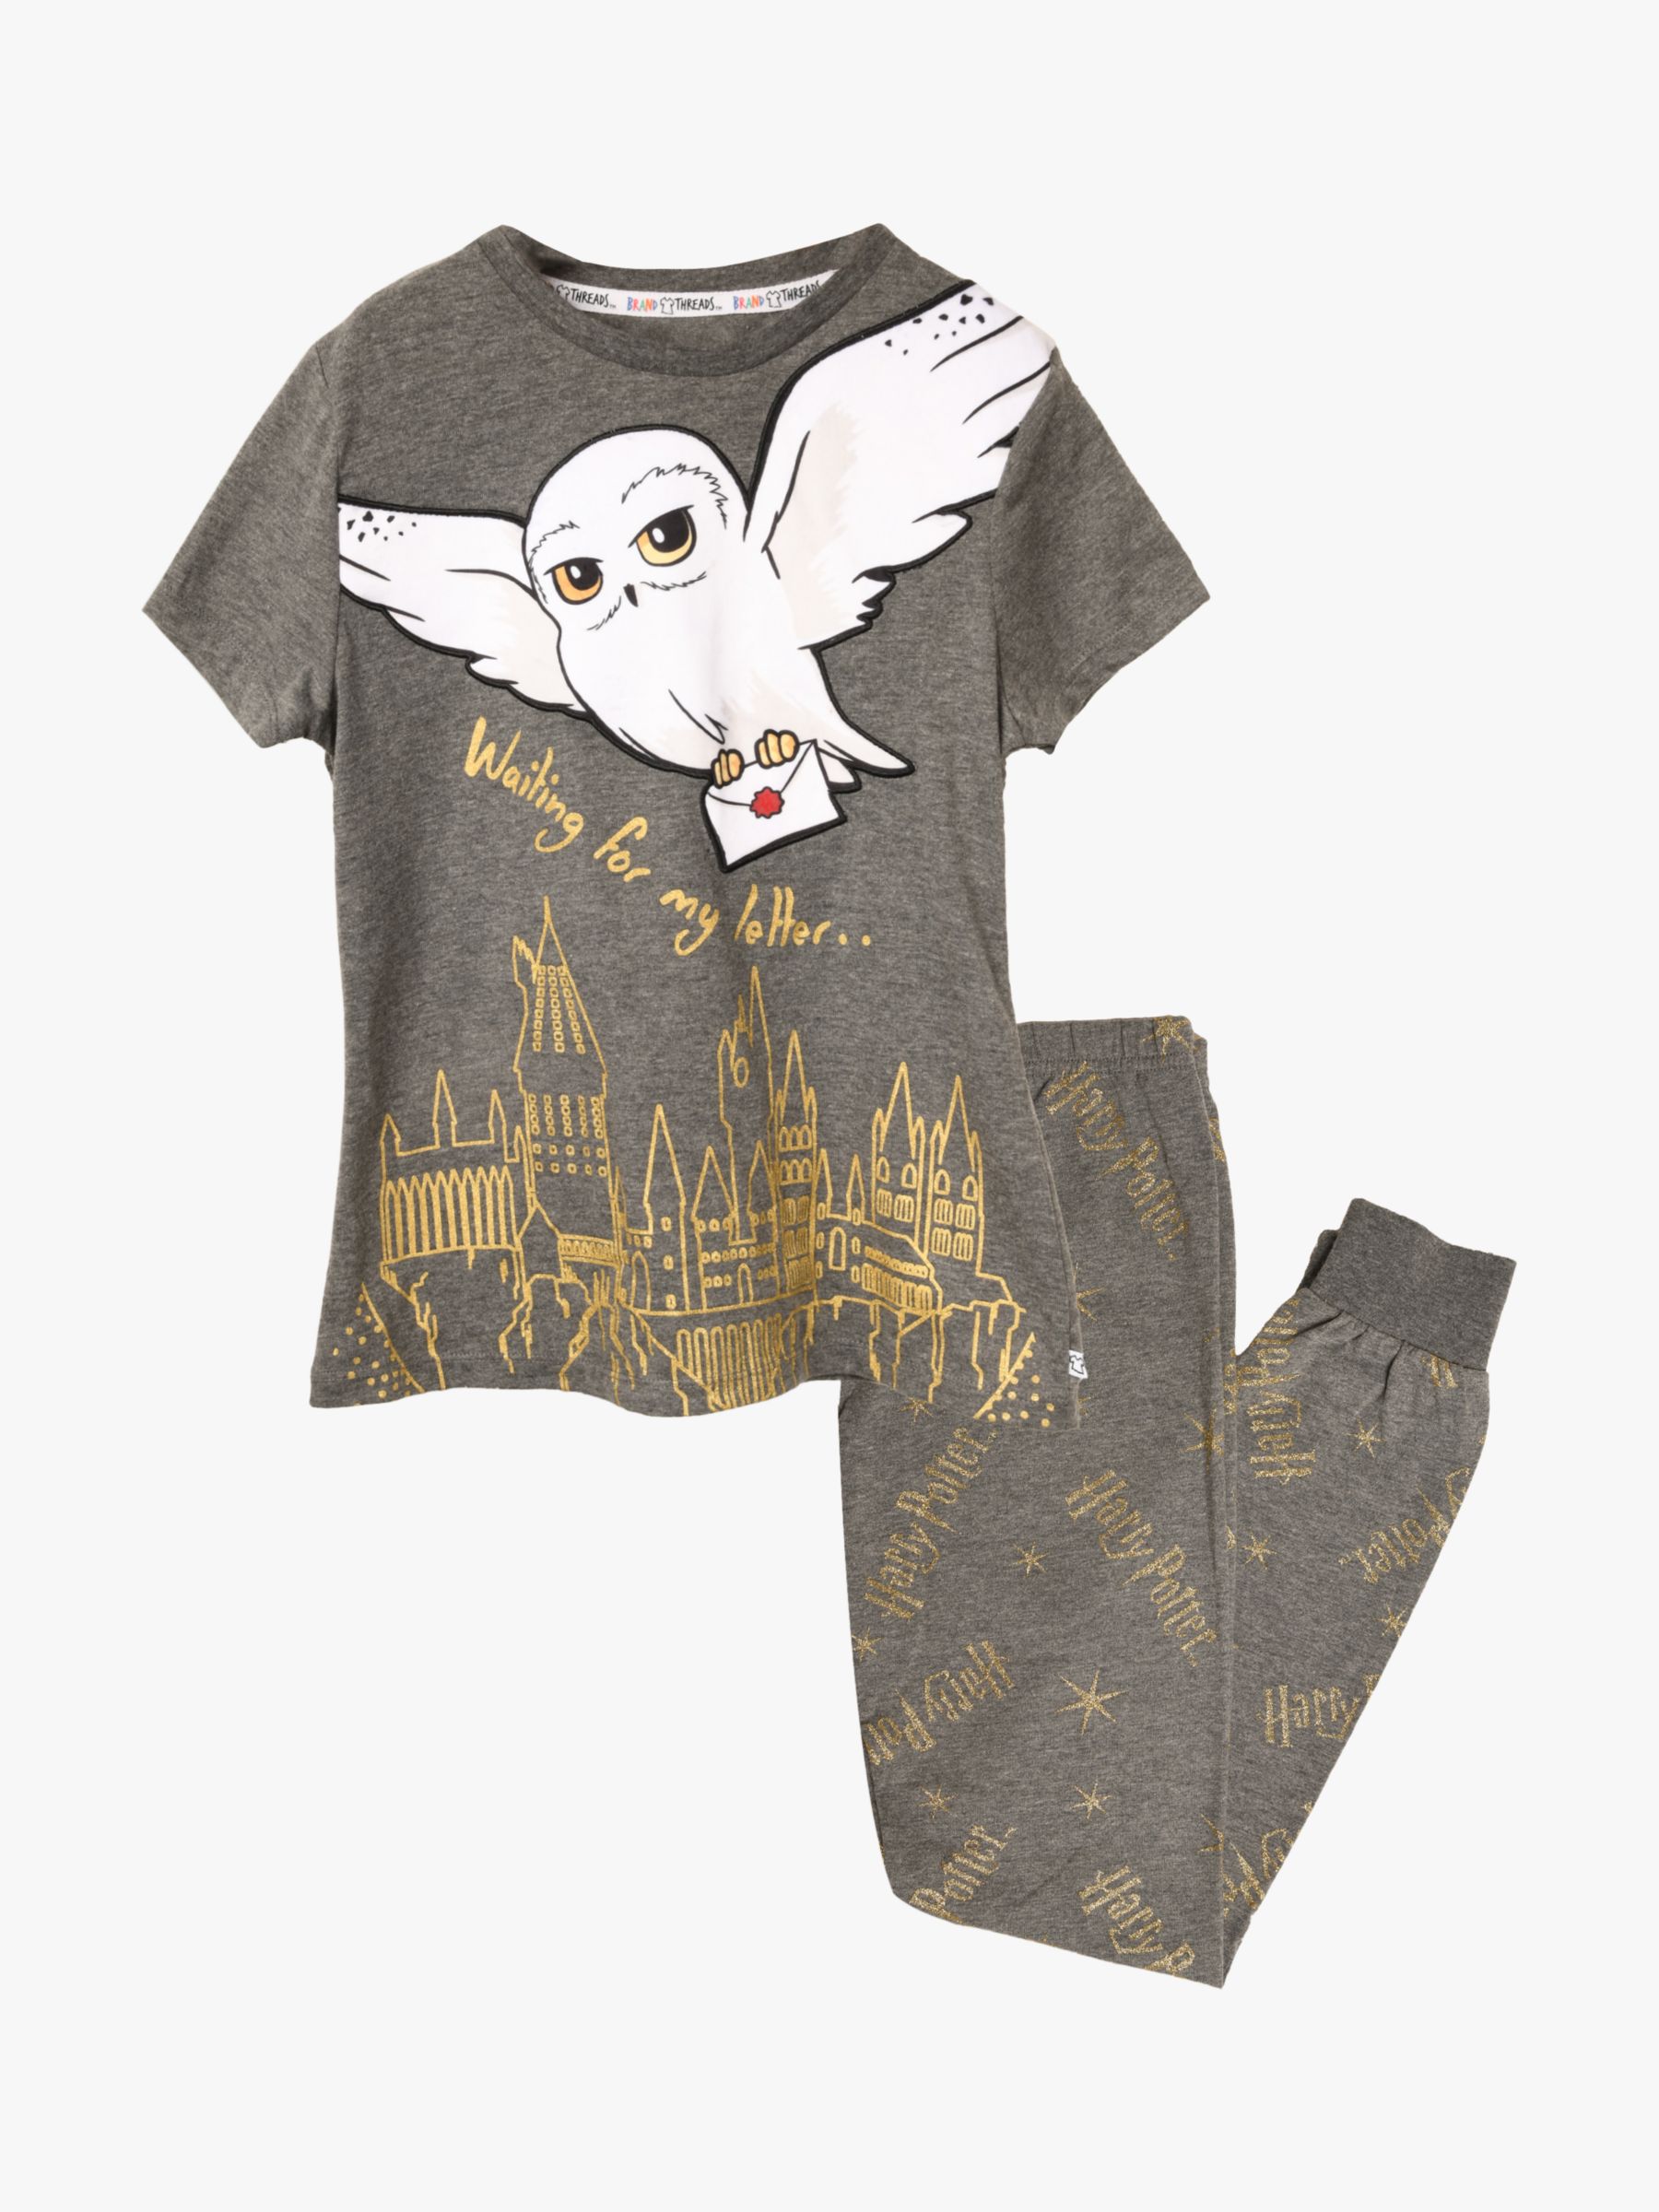 Buy Brand Threads Kids' Harry Potter Hedwig Pyjama Set, Grey Online at johnlewis.com